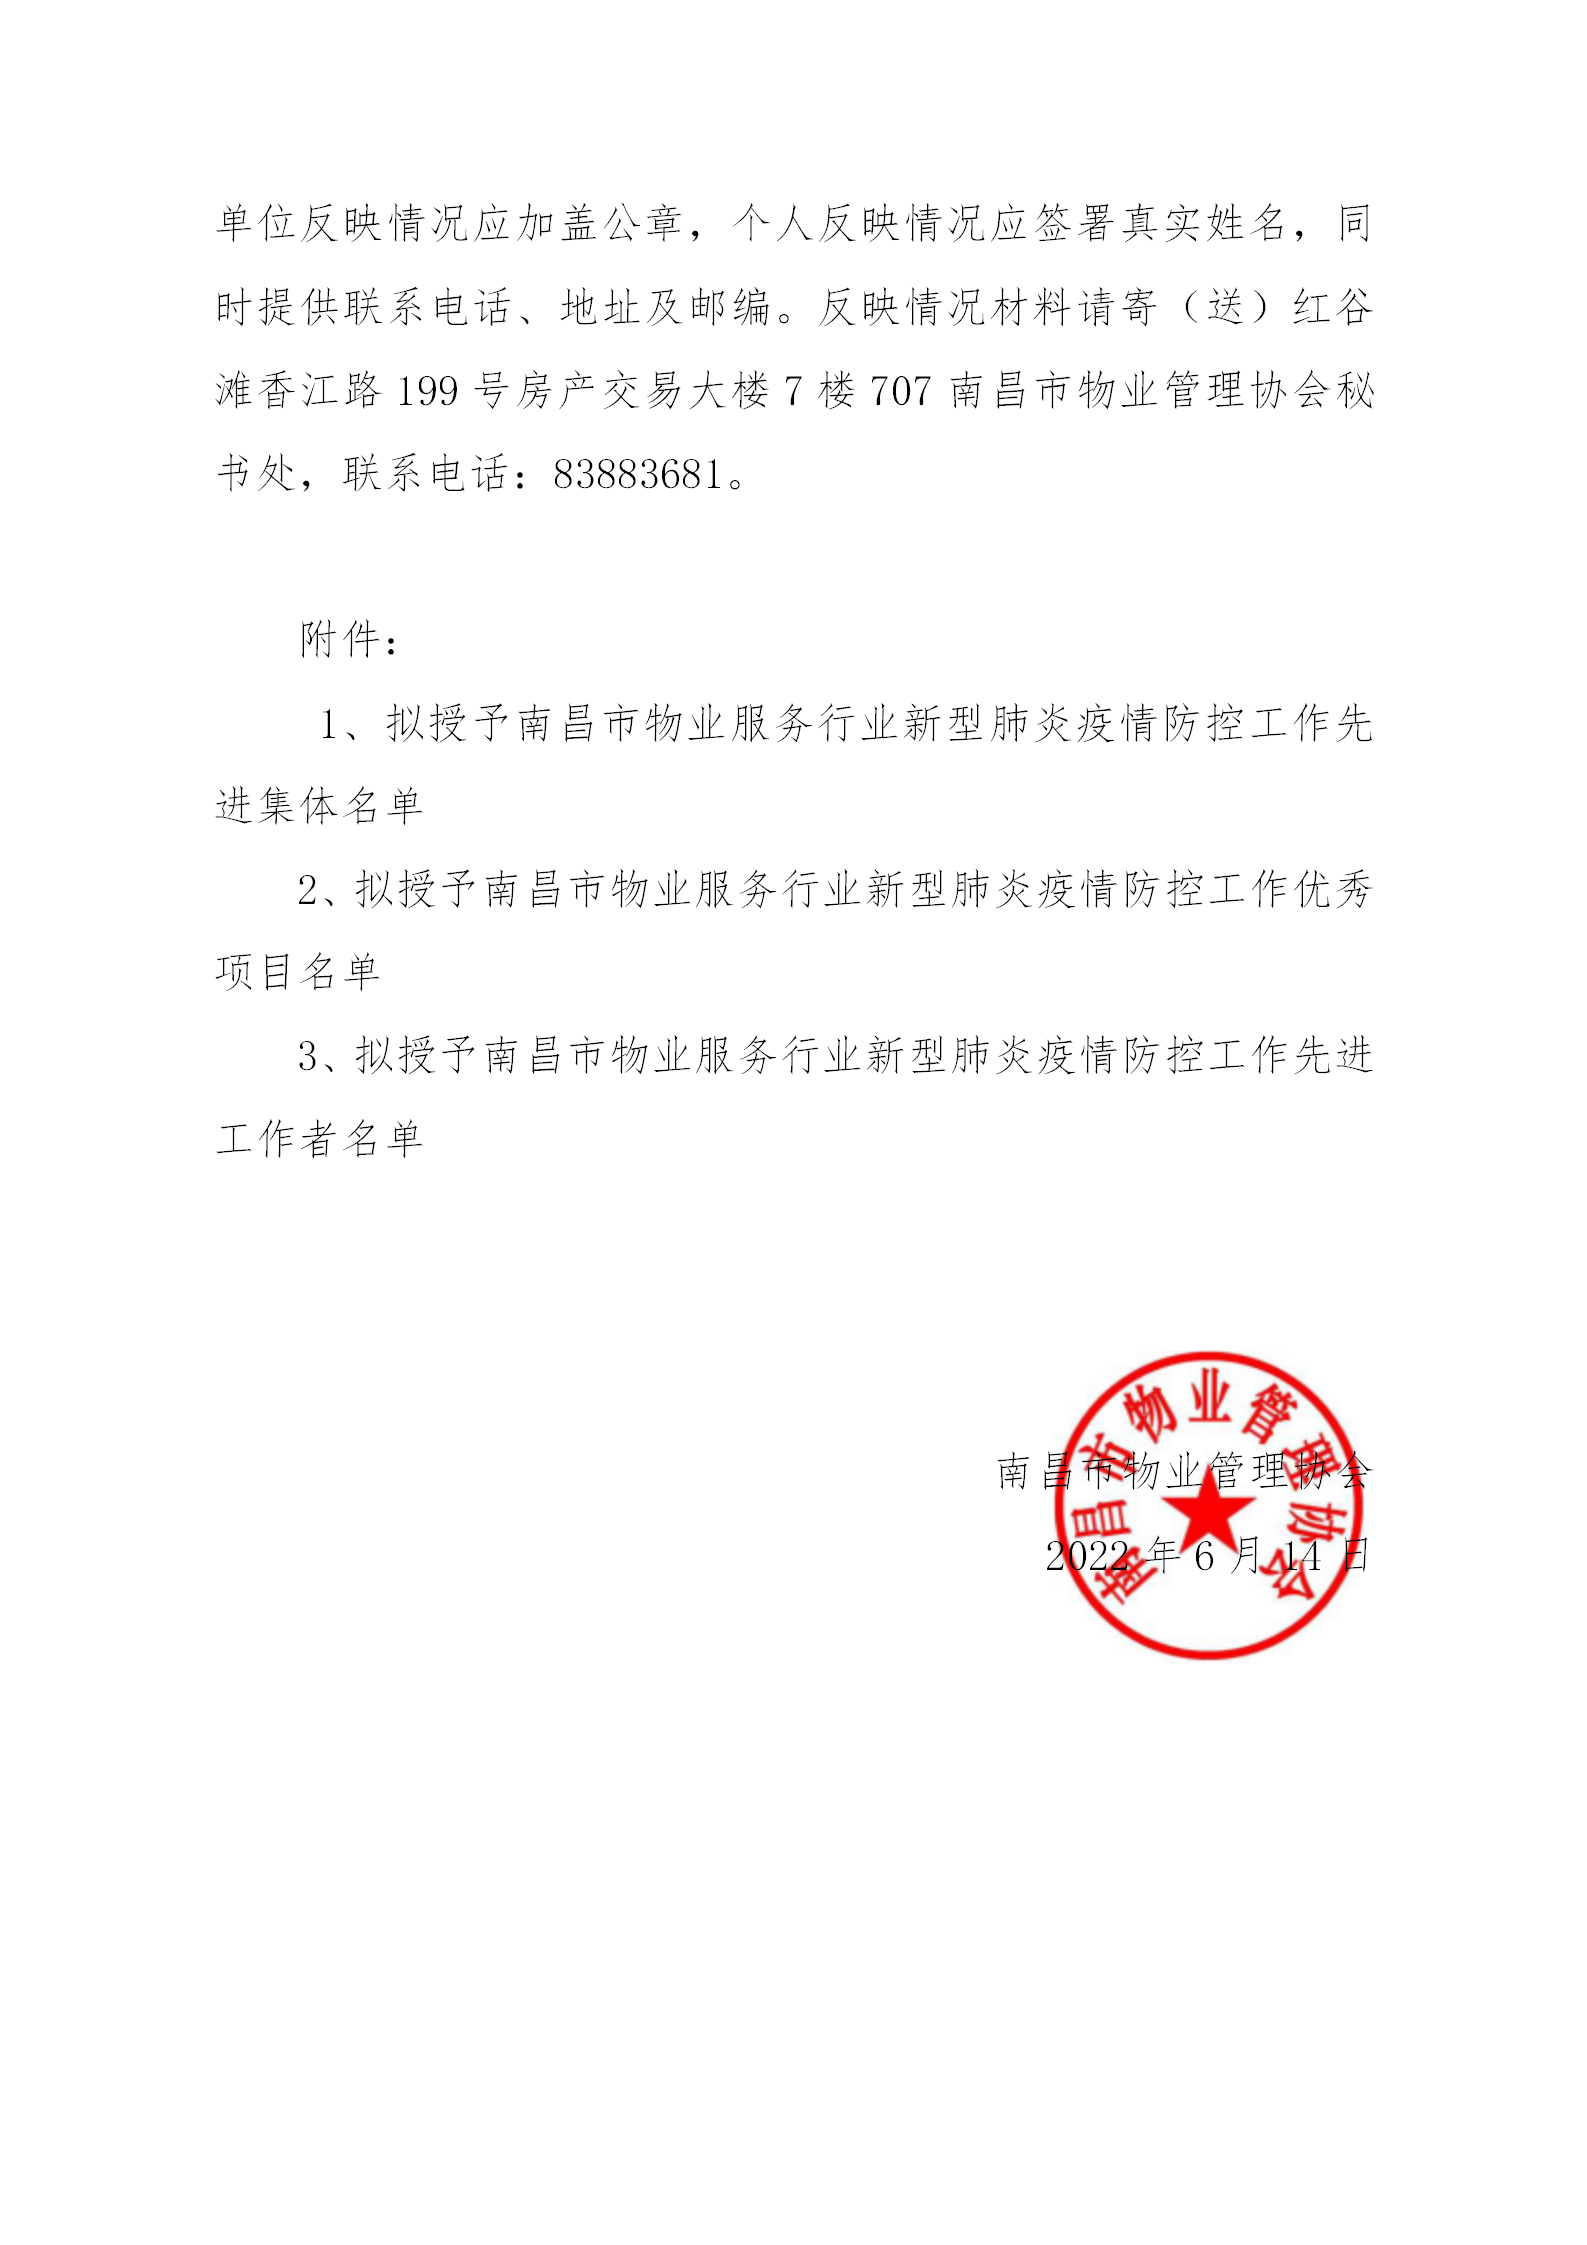 关于评选南昌市物业服务行业新型肺炎疫情防控工作先进的公示_02.png